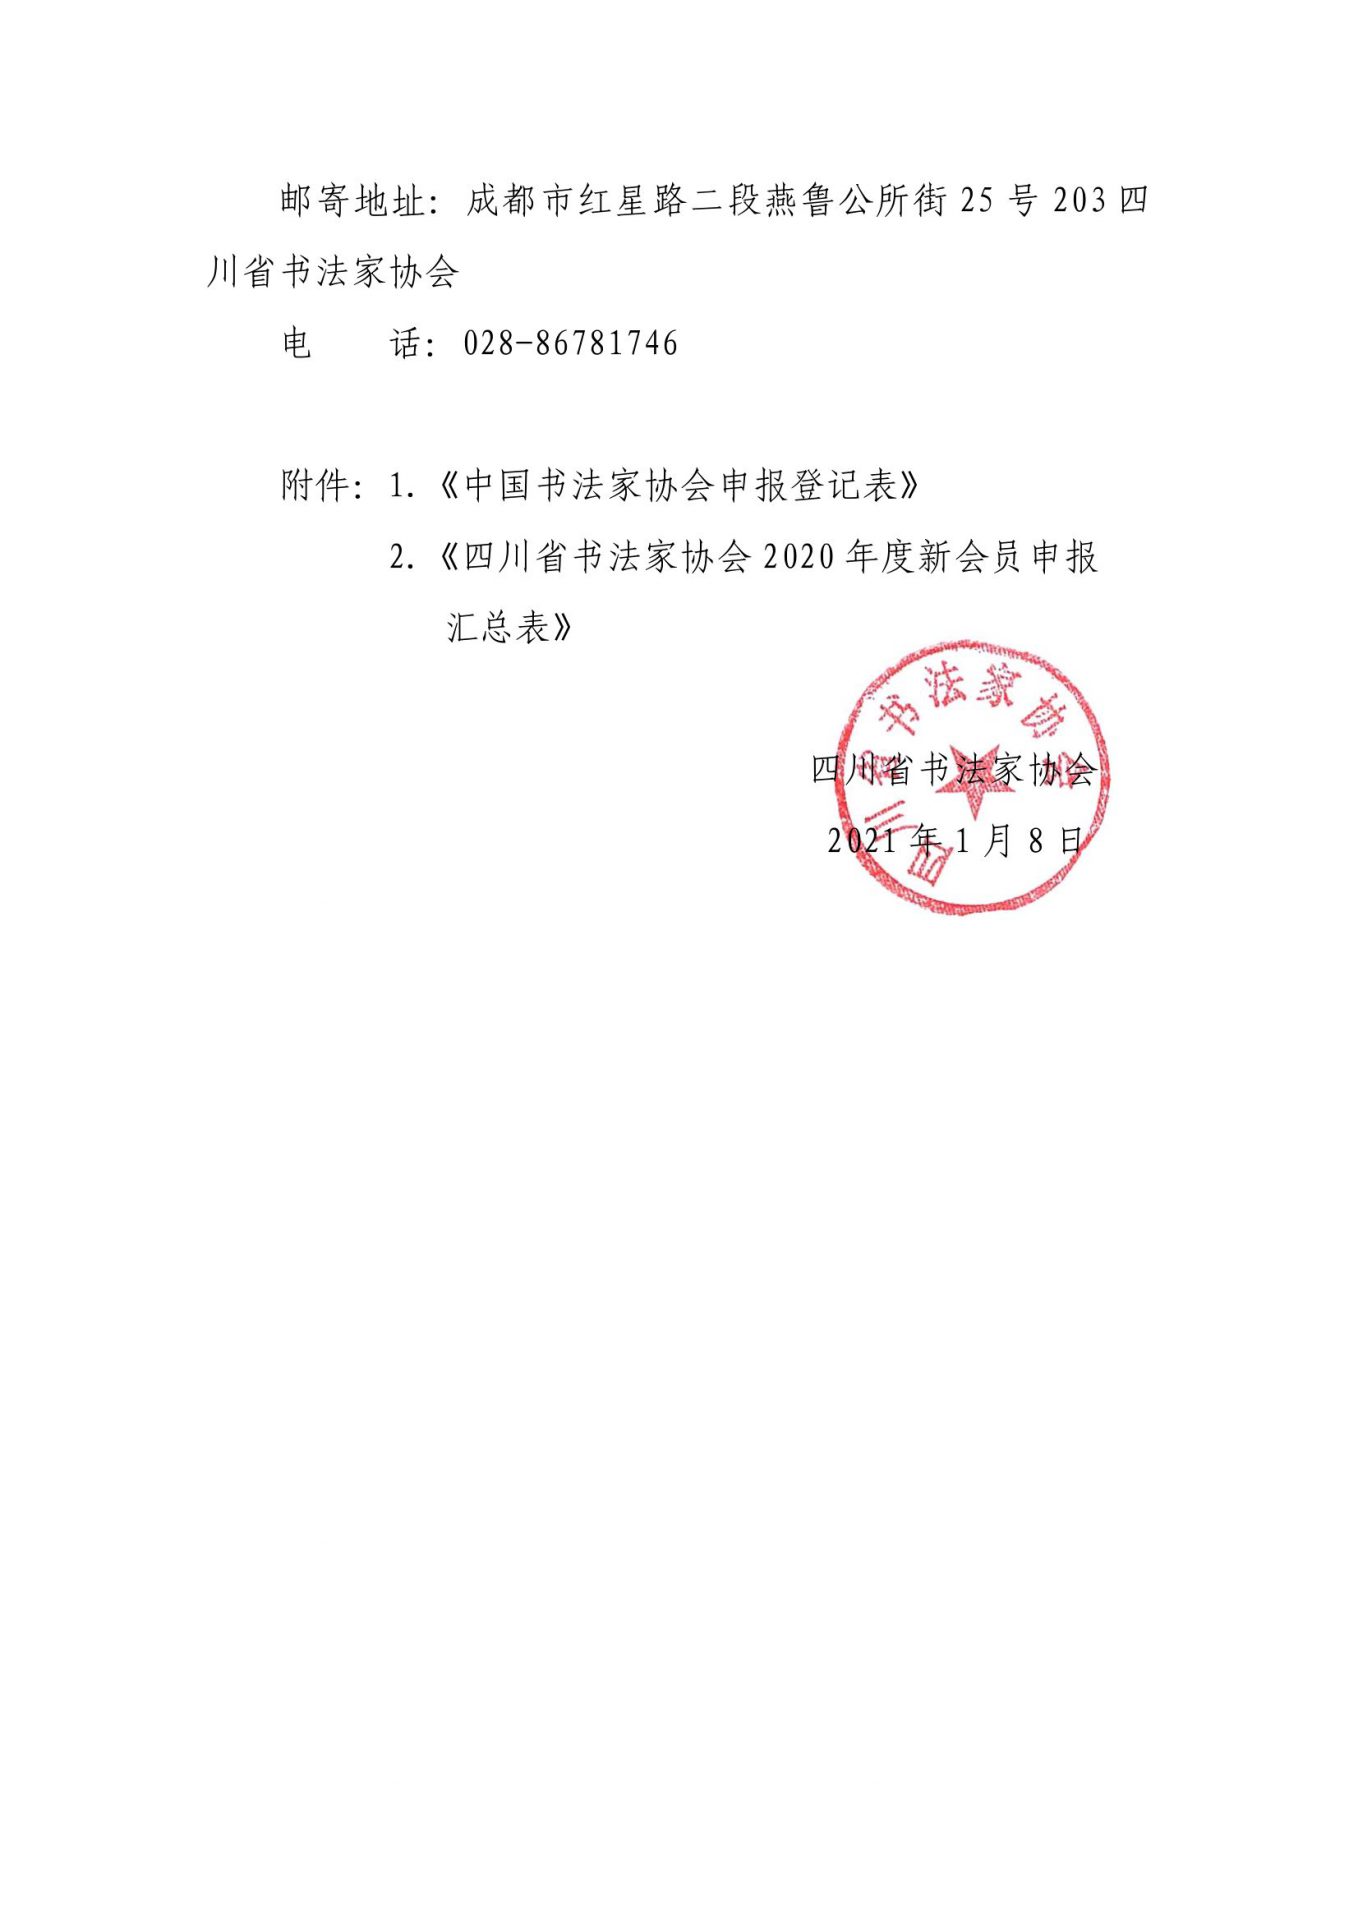 成都市书协关于2020年度中国书协、省书协会员申报工作的通知